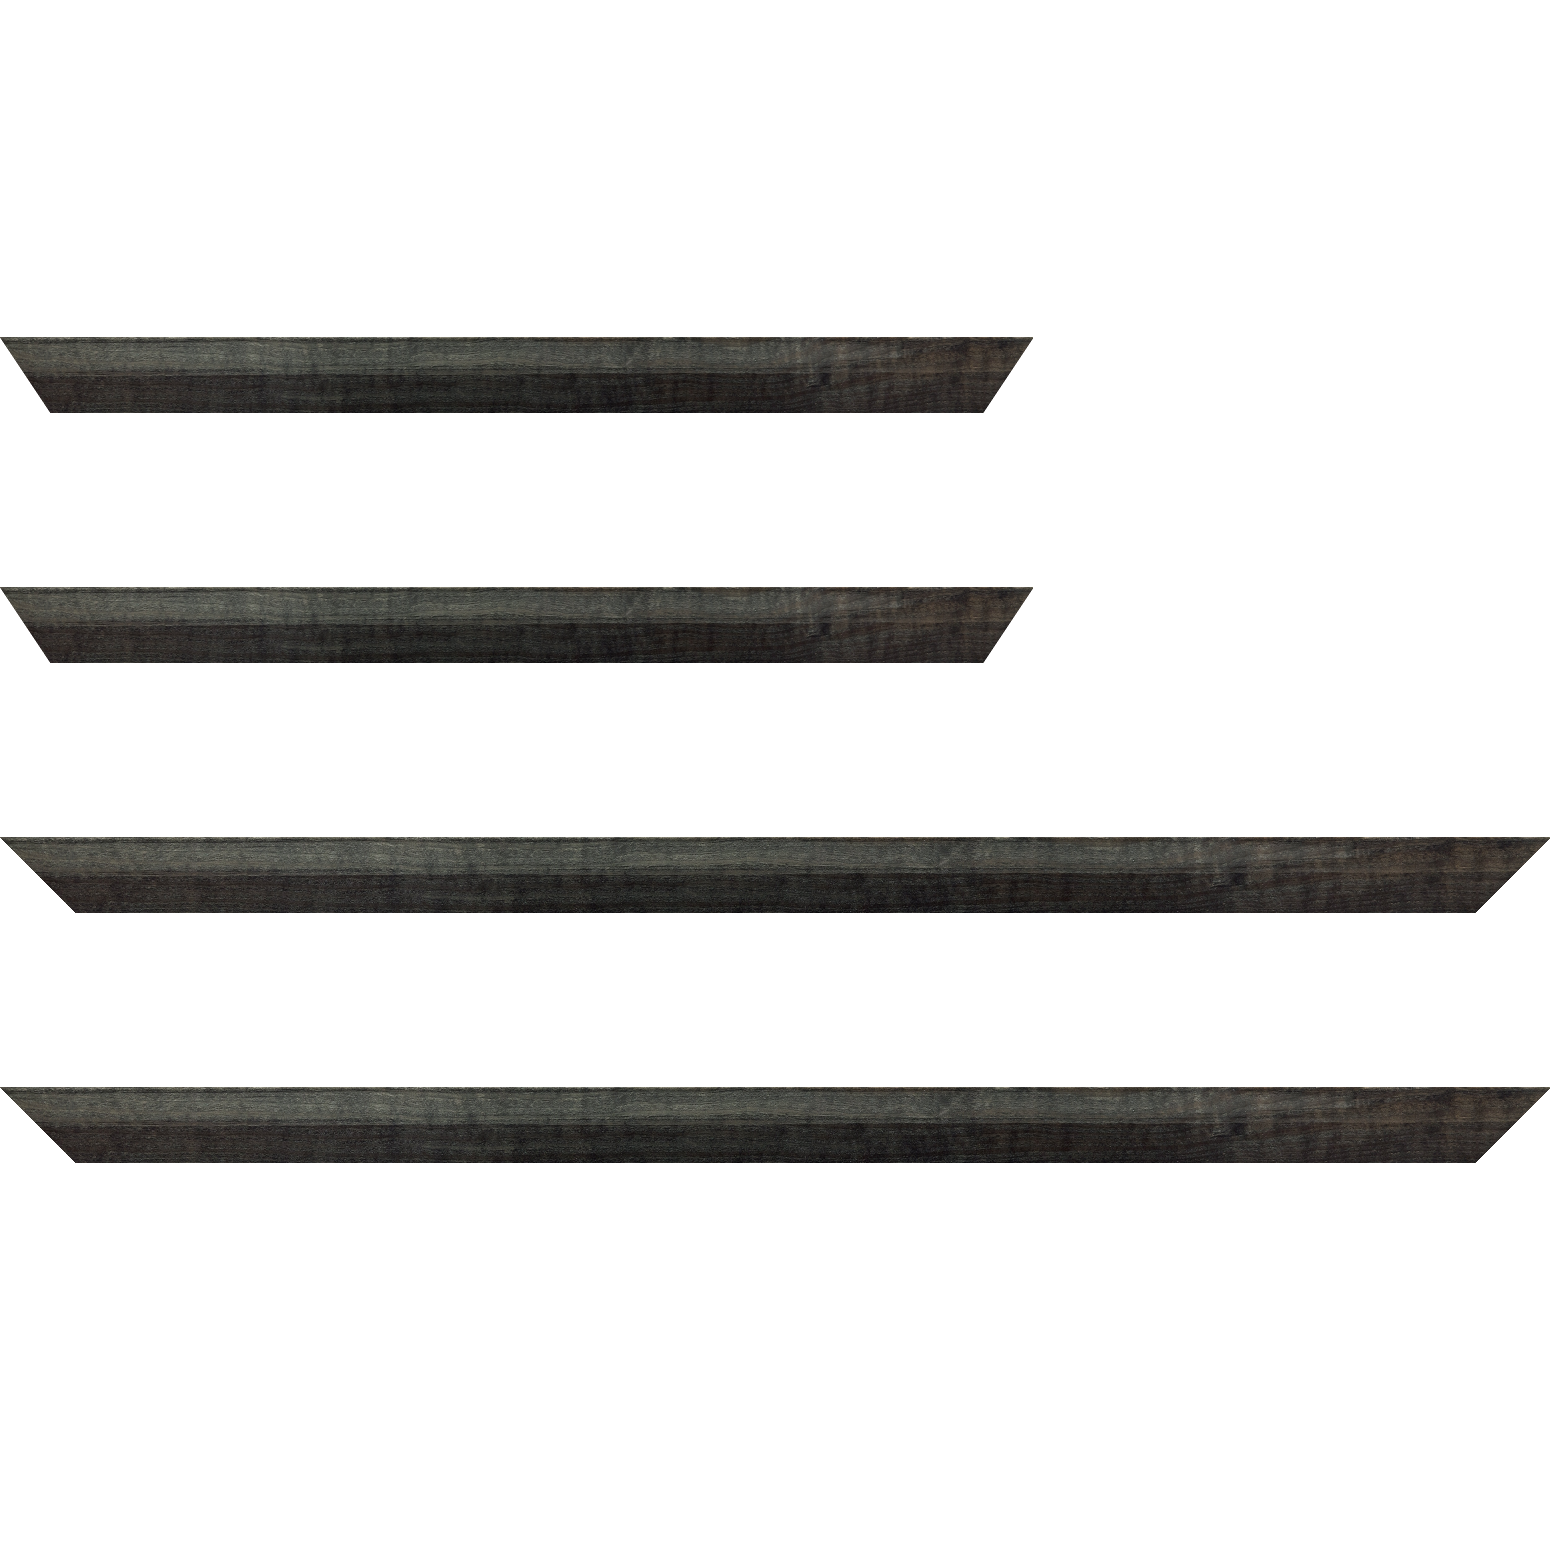 Baguette bois profil arrondi en pente plongeant largeur 2.4cm couleur  gris foncé anthracite finition vernis brillant,veine du bois  apparent (pin) , - 28x34